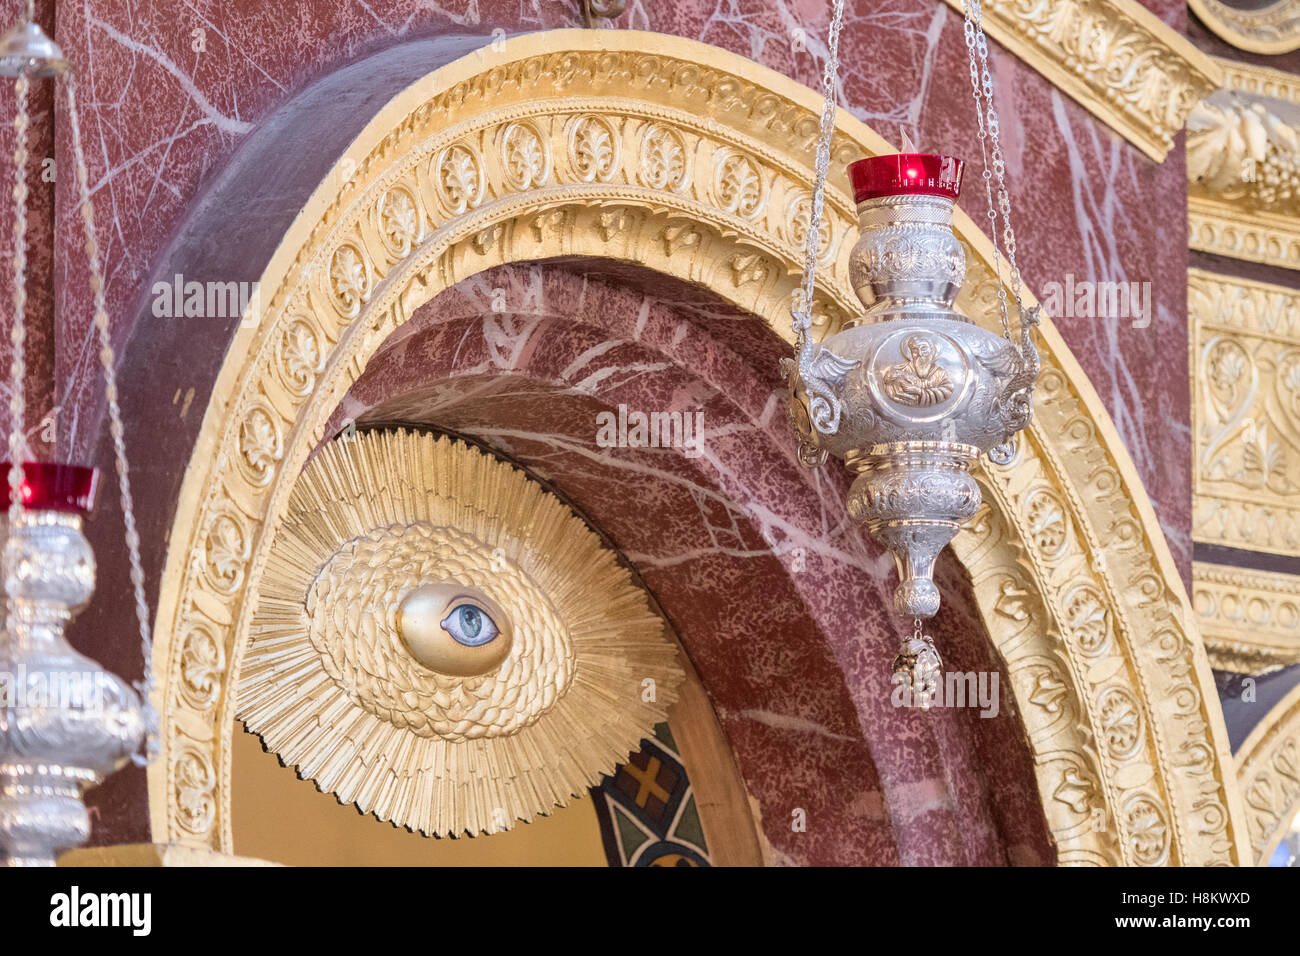 Le Caire, Égypte. Soulagement des yeux d'or sur un mur intérieur de l'église grecque orthodoxe et monastère de Saint George (Mari Girgis) dans t Banque D'Images